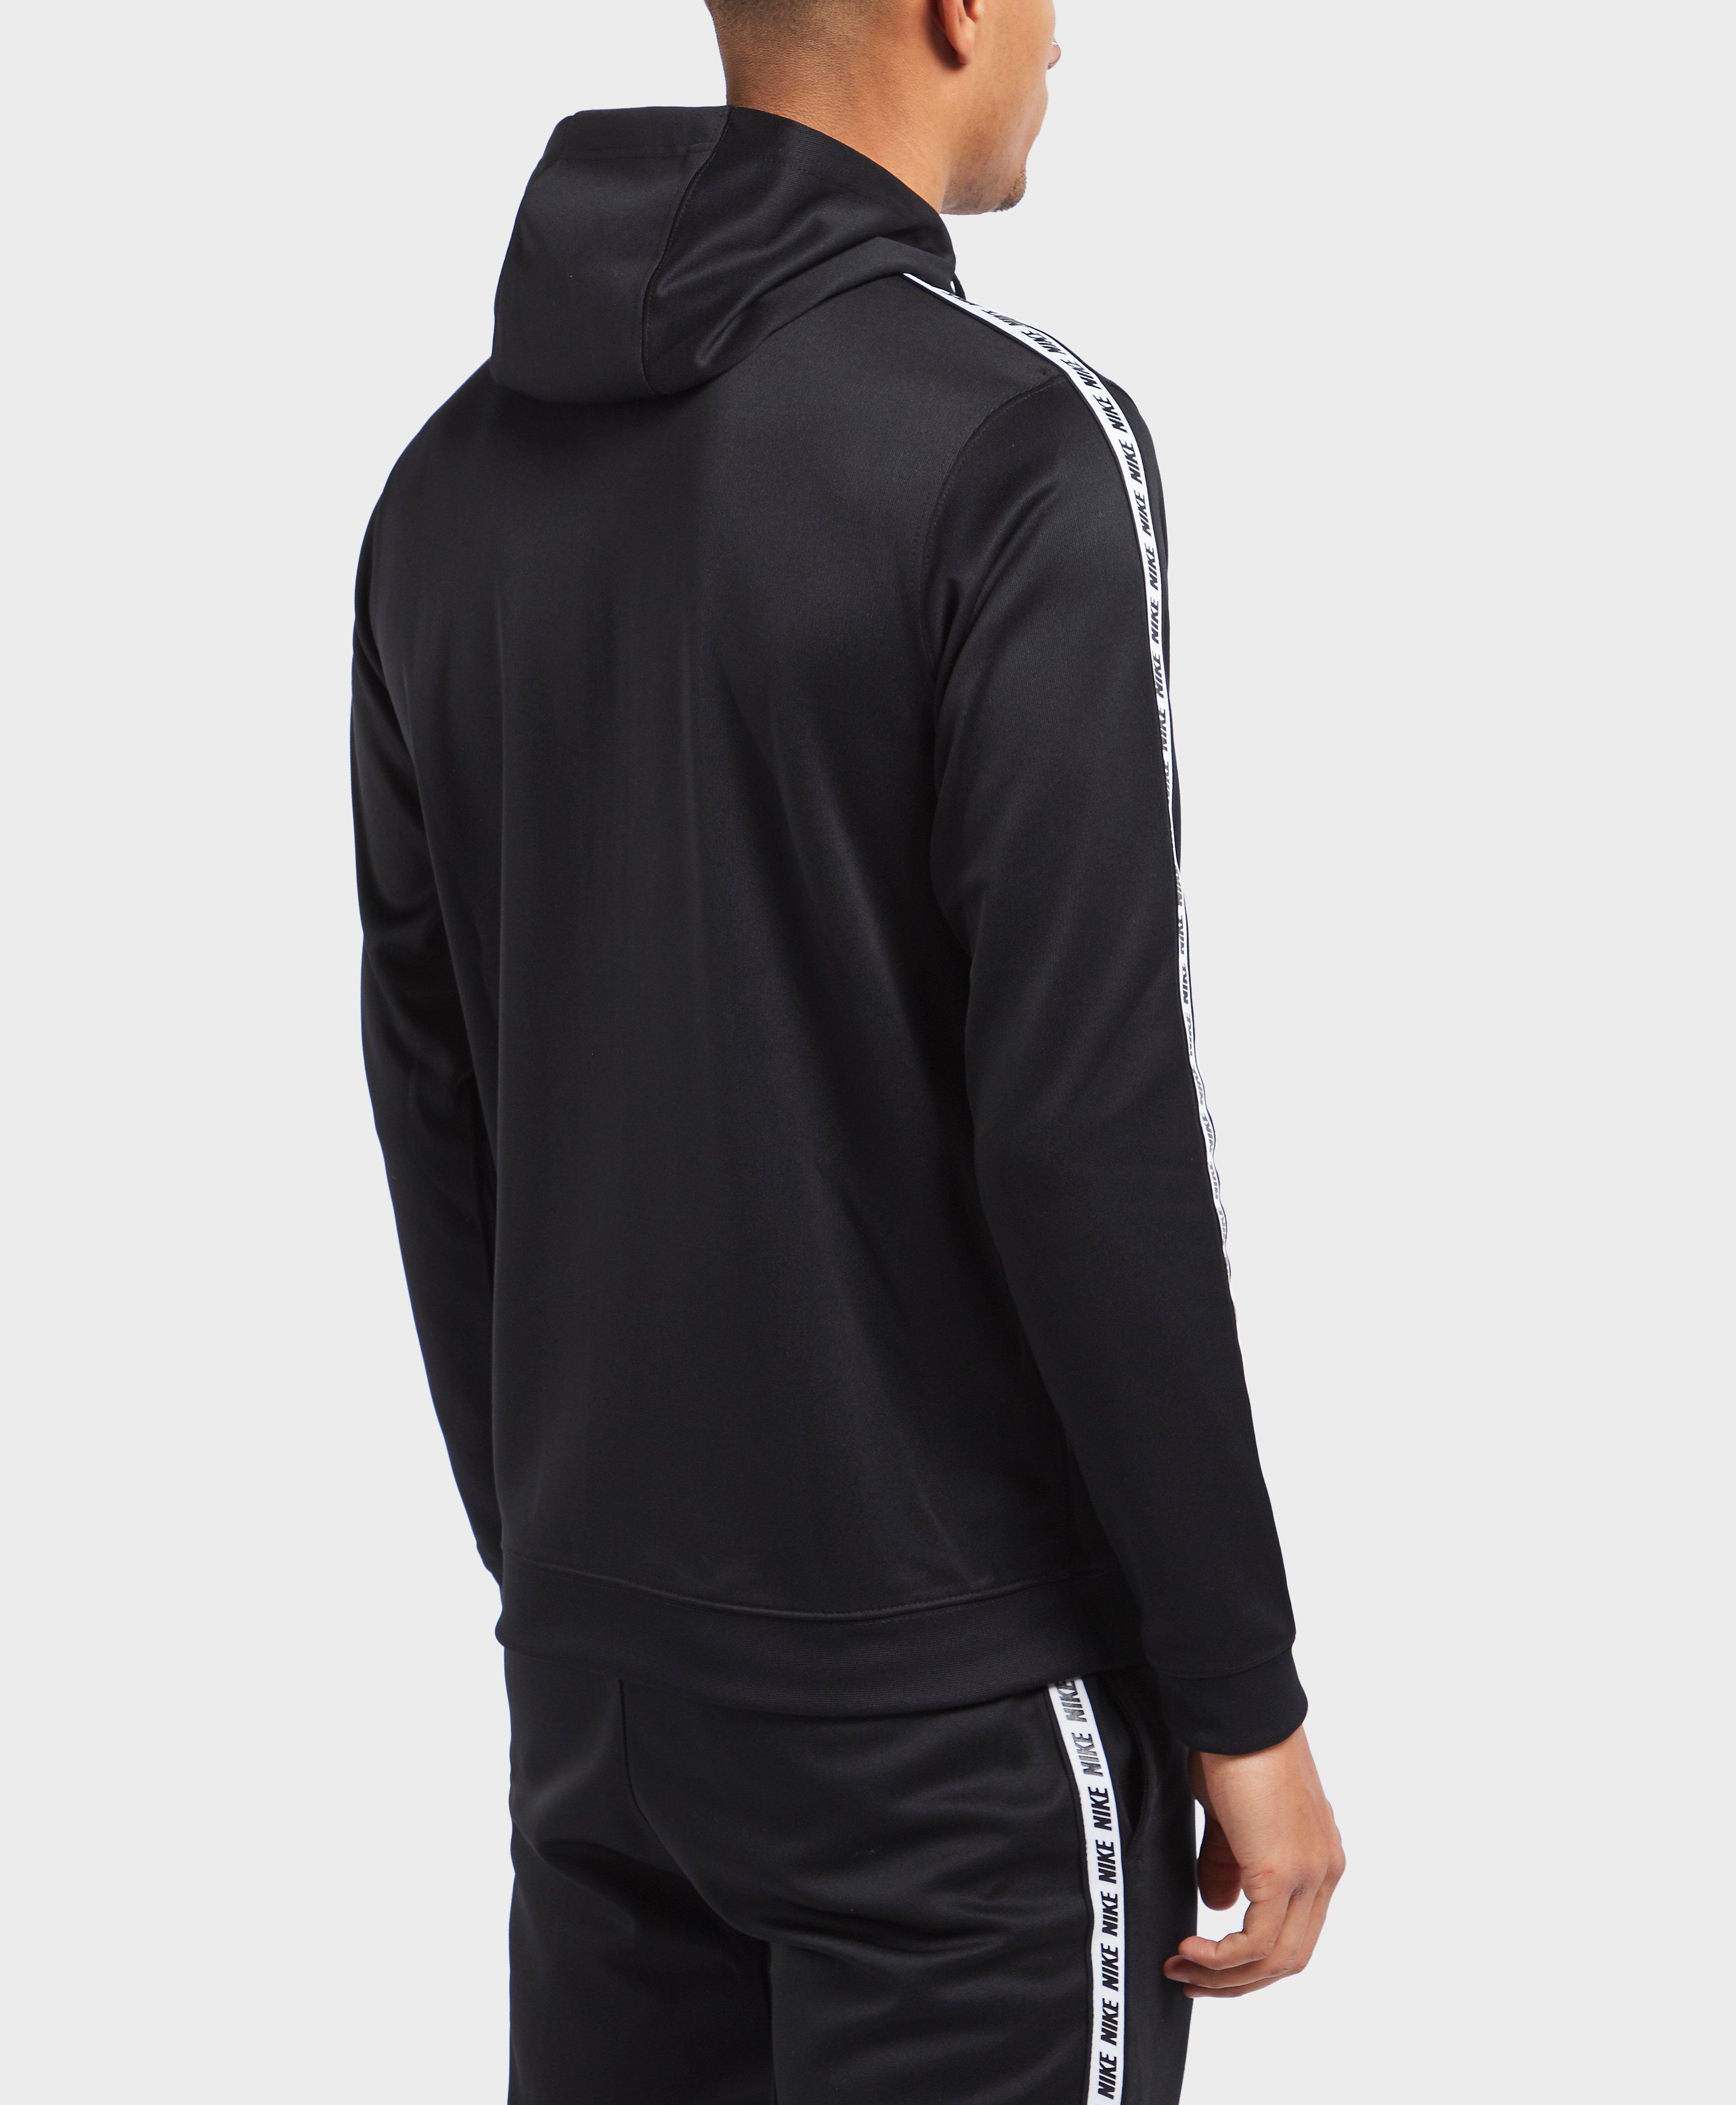 Nike Synthetic Gel Tape Full Zip Hoodie in Black for Men - Lyst